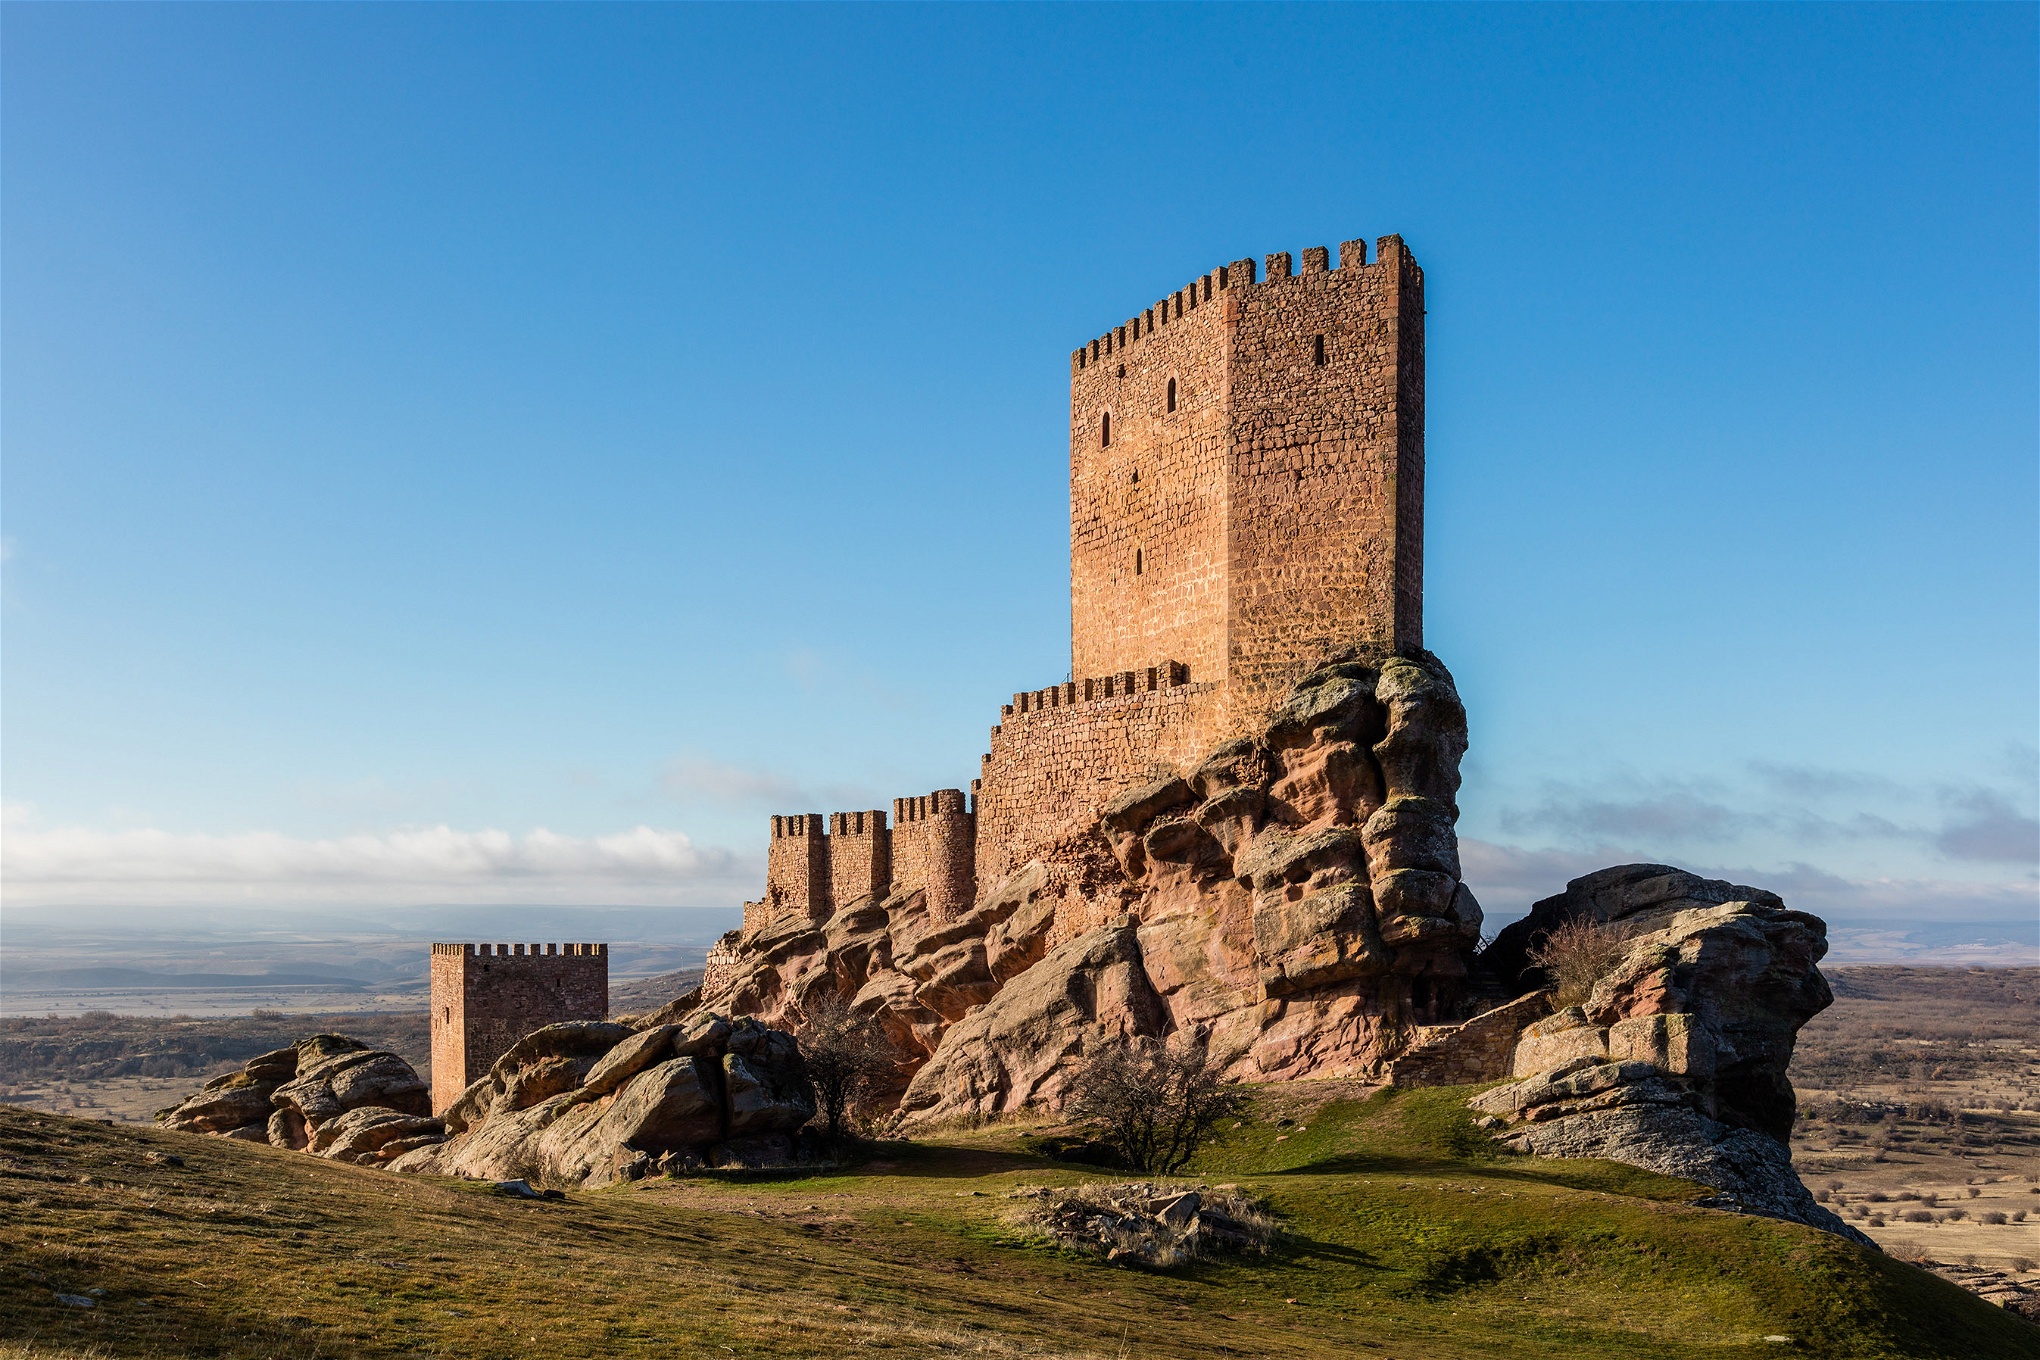 Castillo de Zafra i Spanien är en av inspelningsplatserna för Game of Thrones. Samhällsordningen i serien kan liknas vid ett medeltida vasallsystem, där furstendömena i utbyte mot beskydd ställer soldater till kungarikets förfogande.